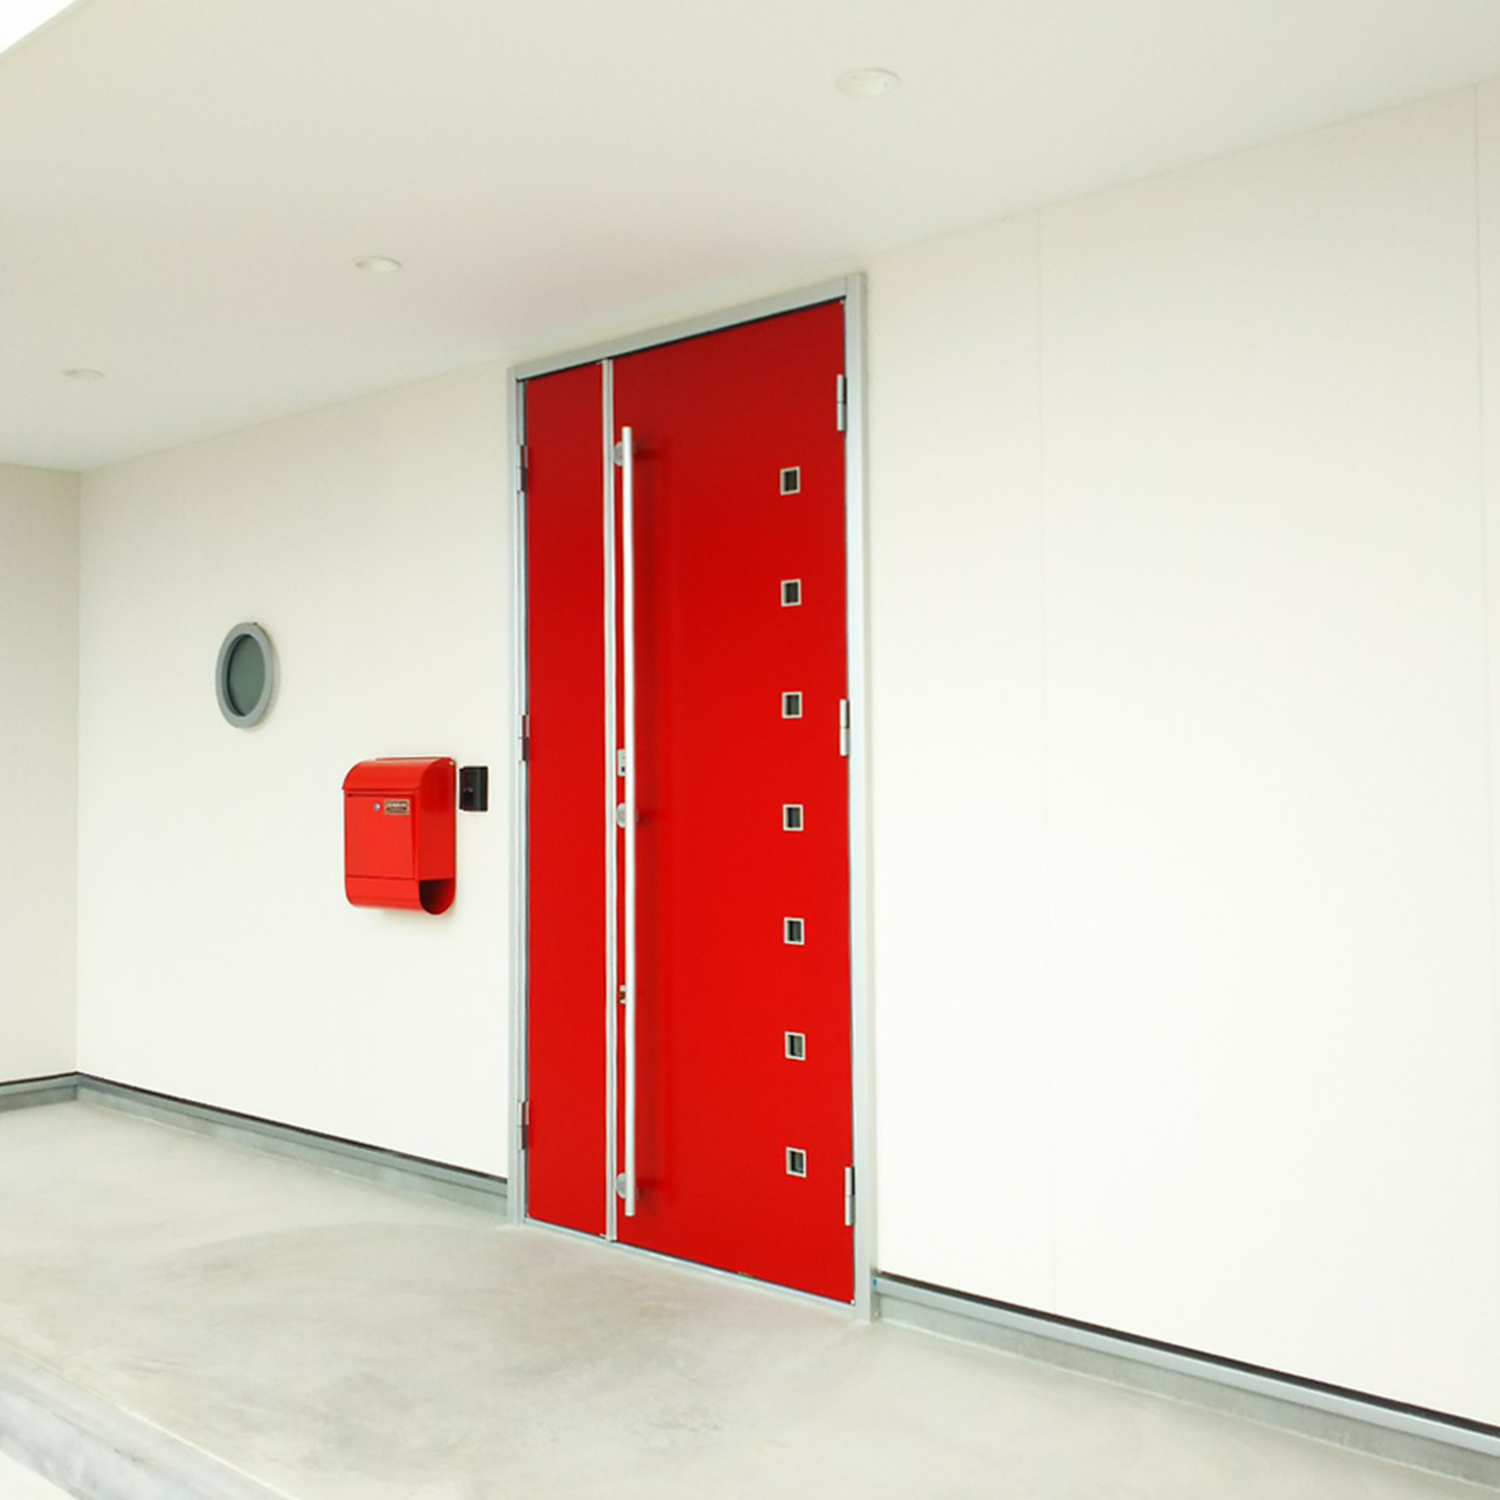 真っ白な外壁と赤い玄関ドアが印象的な家